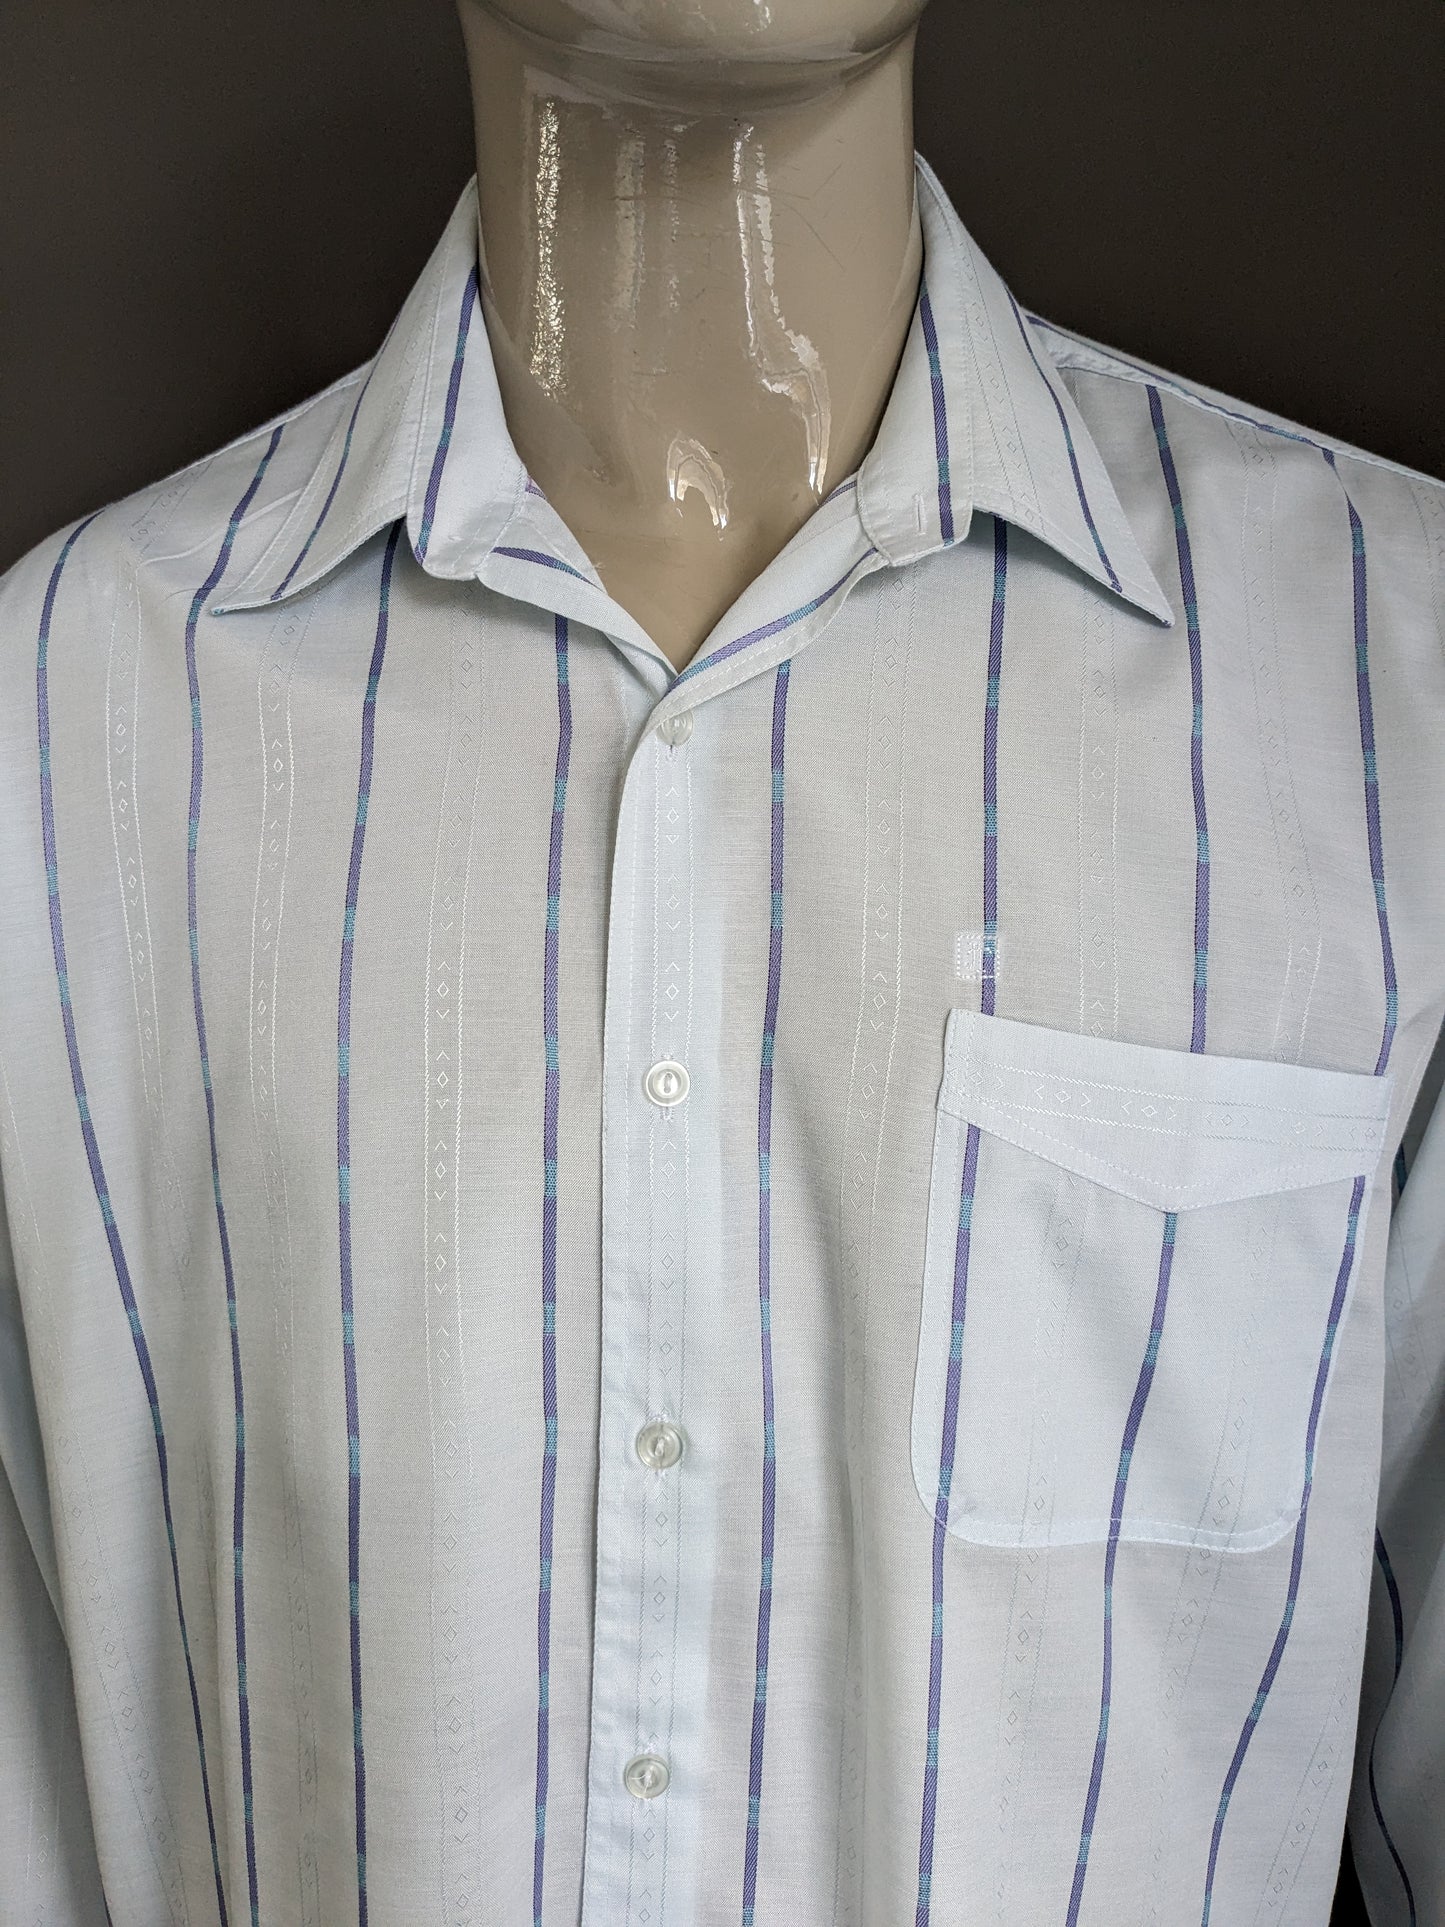 Vintage Jacqueline de Tancot 70's shirt with point collar. Light blue motif. Size XL / XXL-2XL.